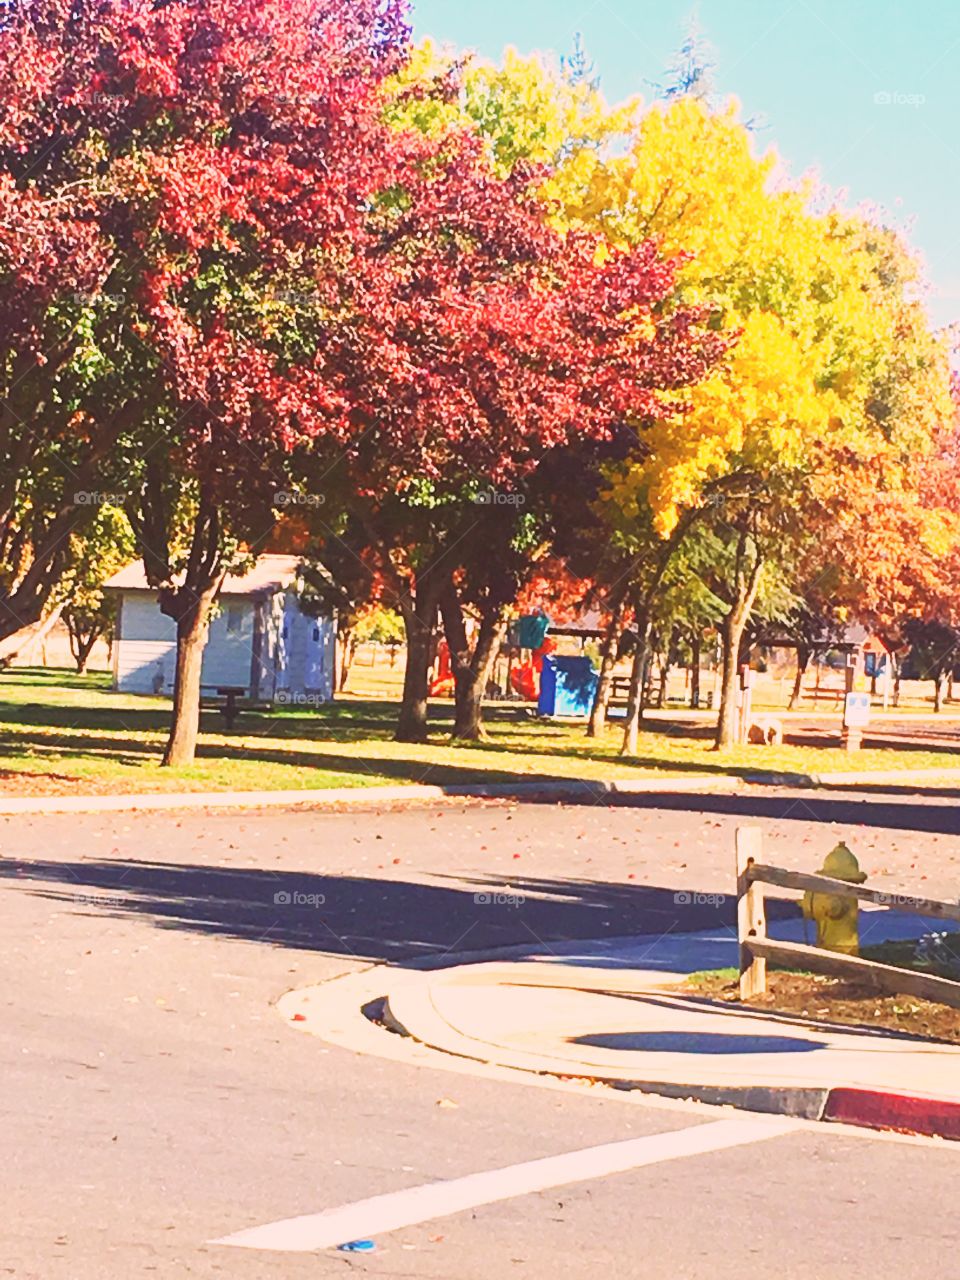 Hun ermoso parque con sus árboles de colores
